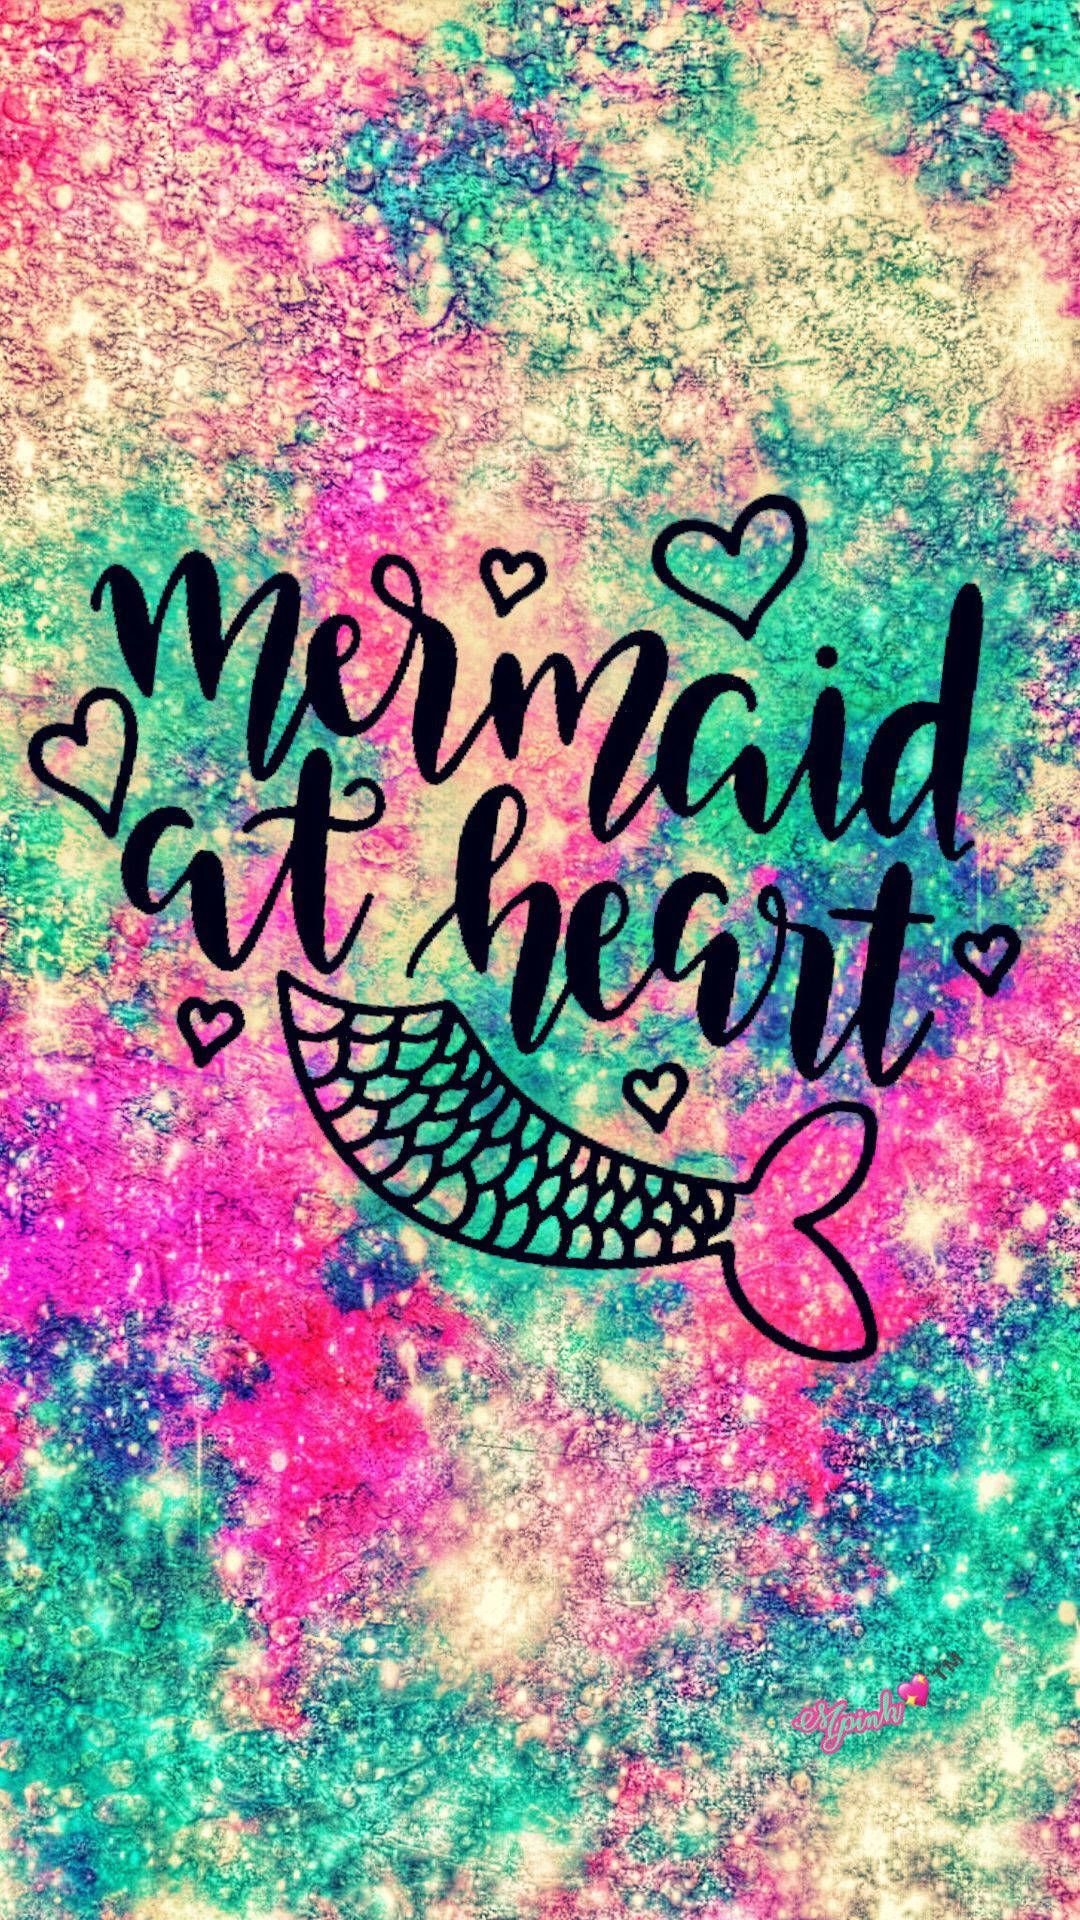 Mermaid at heart wallpaper by @zephyrdesigns - Mermaid